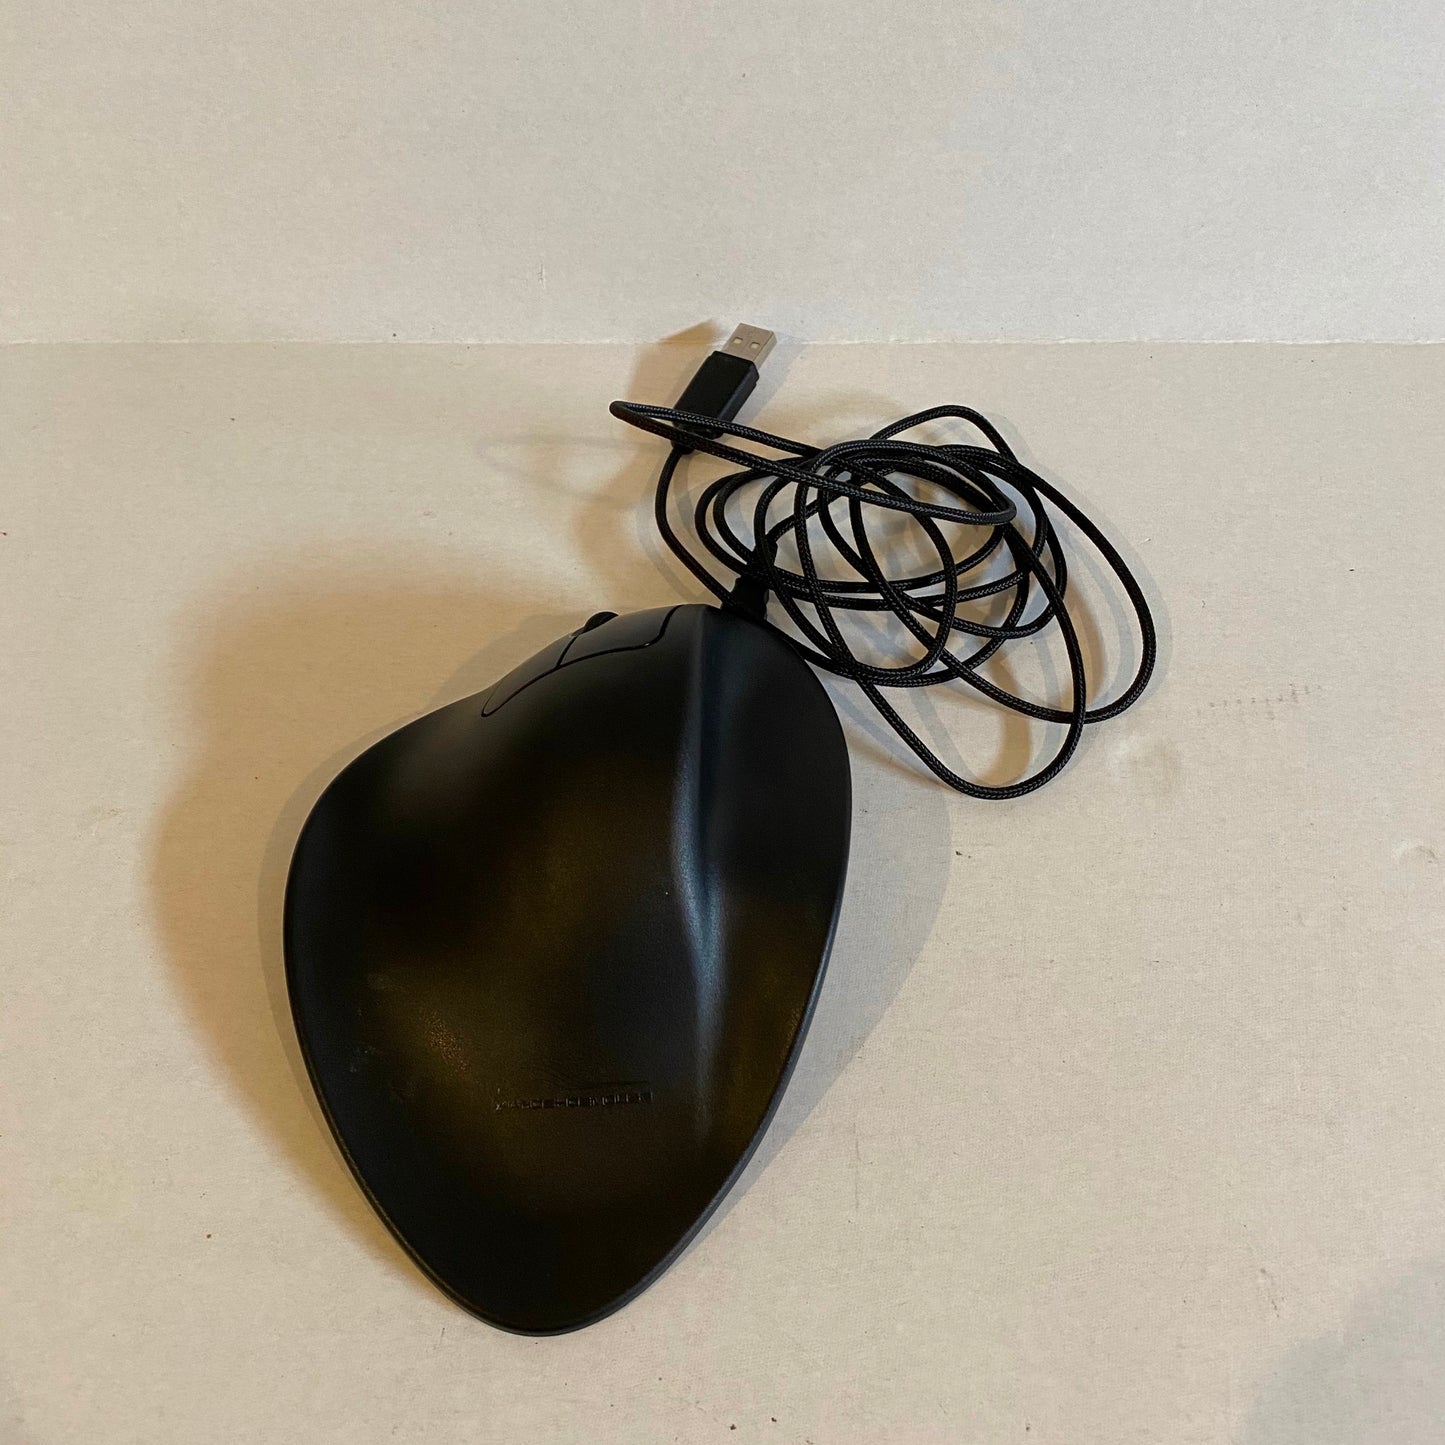 Hippus HandShoe Mouse - Wired Left Hand Medium - LM2WL